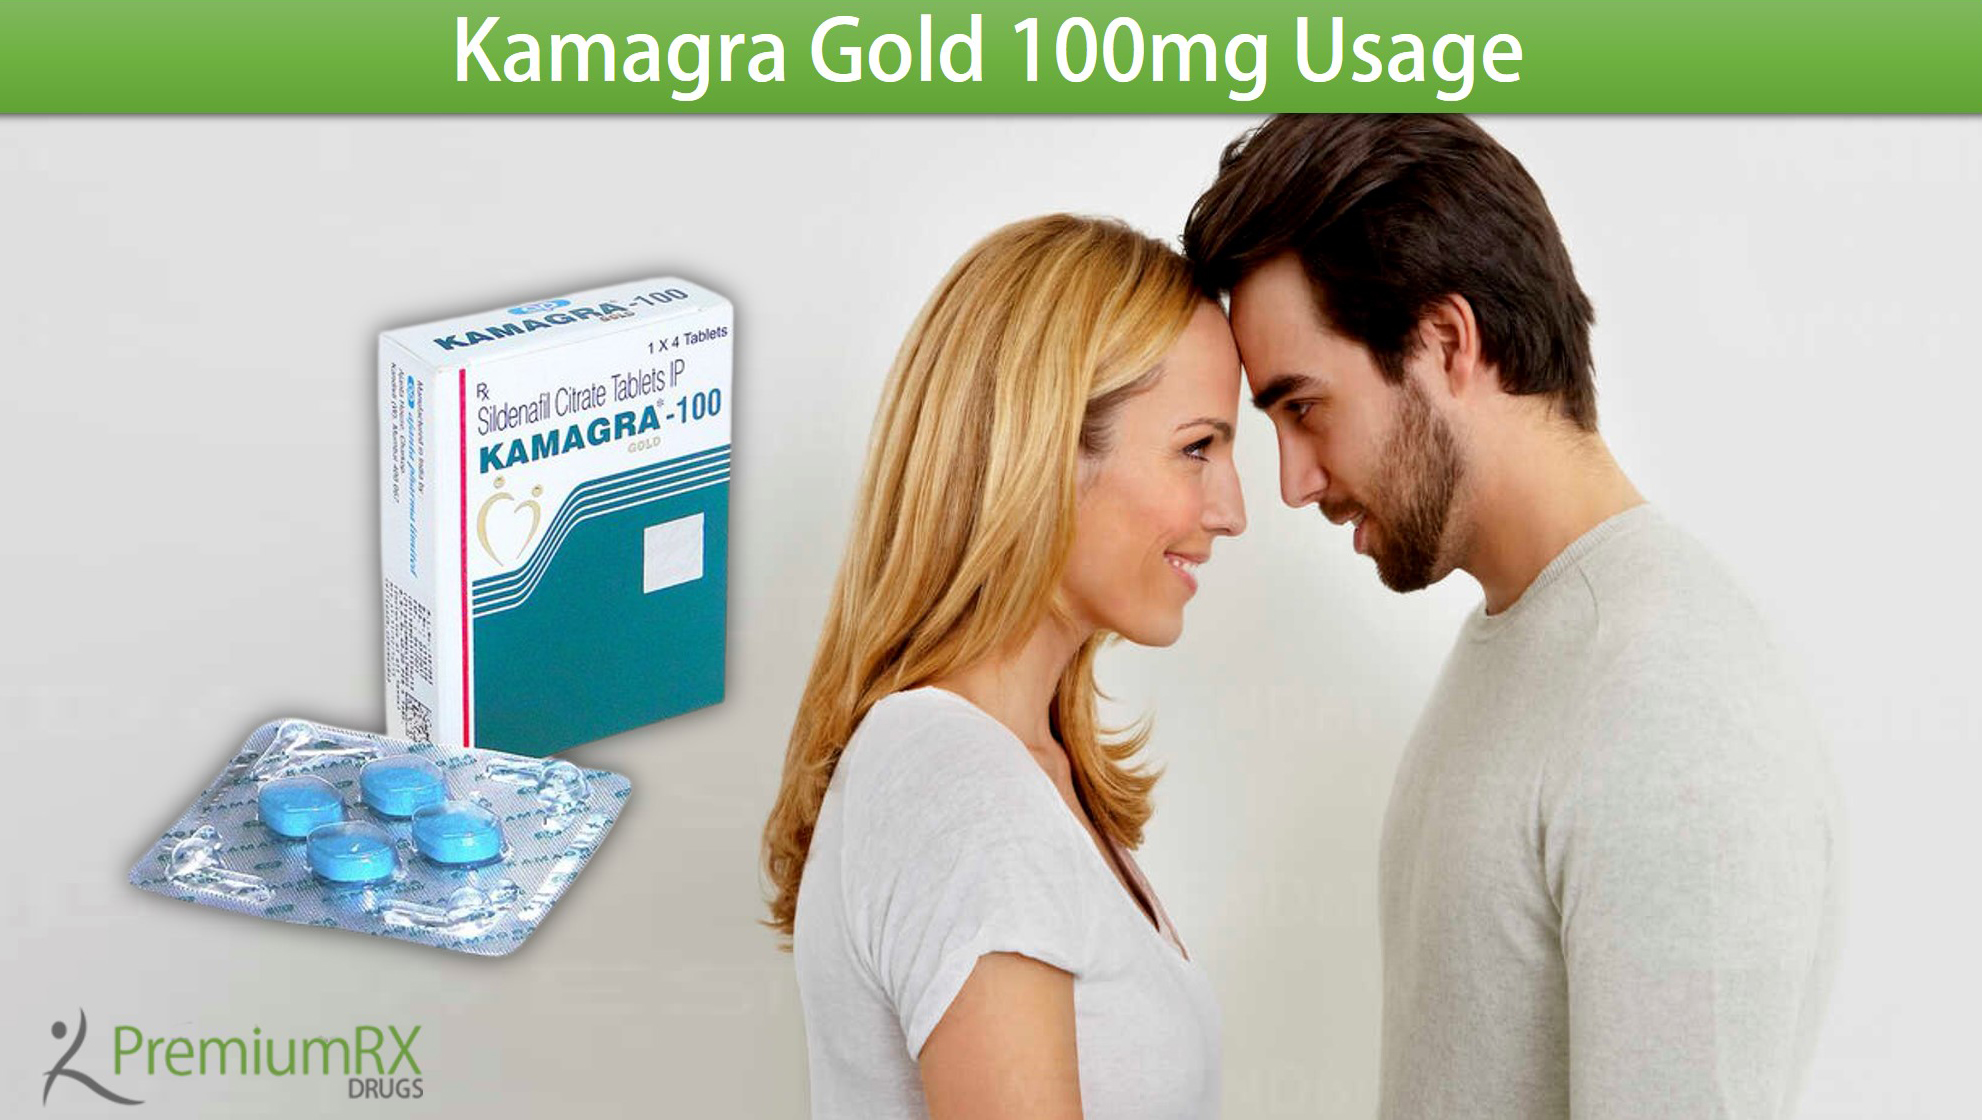 Kamagra Gold 100mg Usage